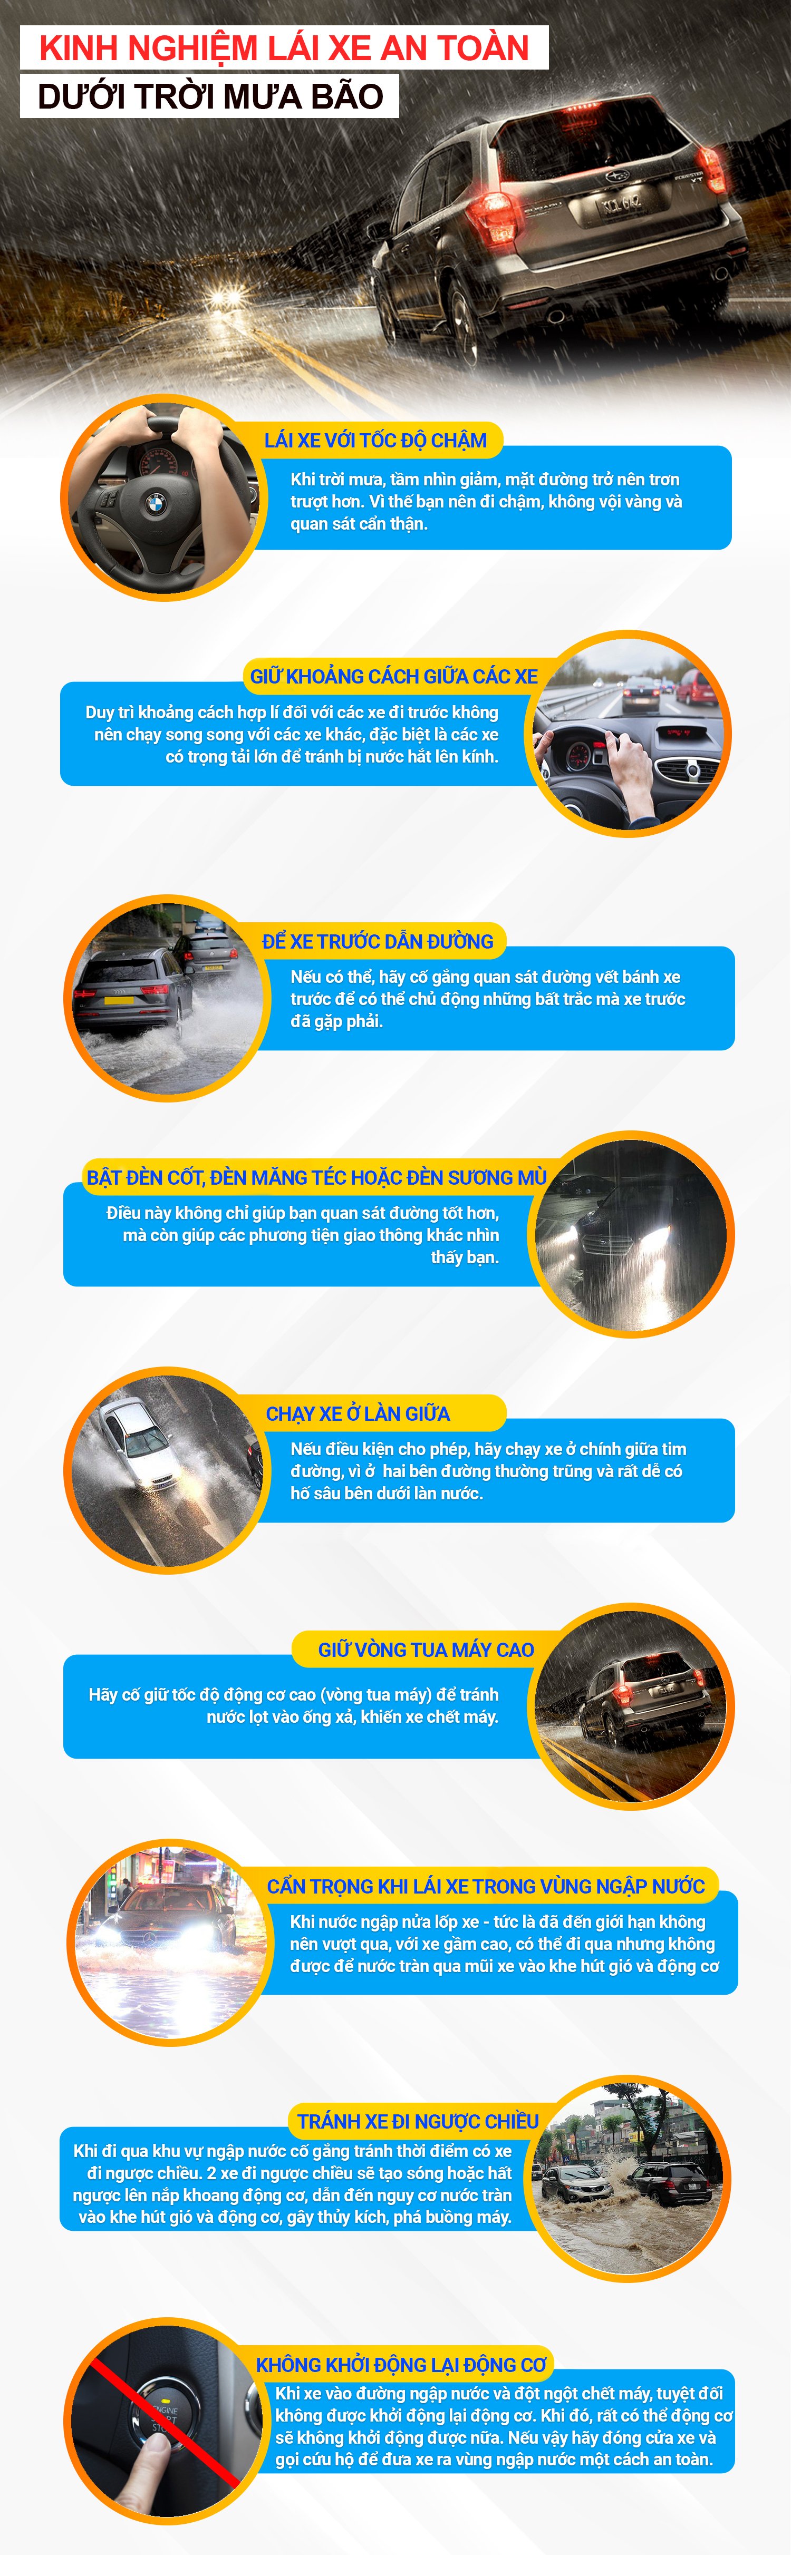 [Infographic] Kinh nghiệm lái xe an toàn dưới trời mưa bão a1